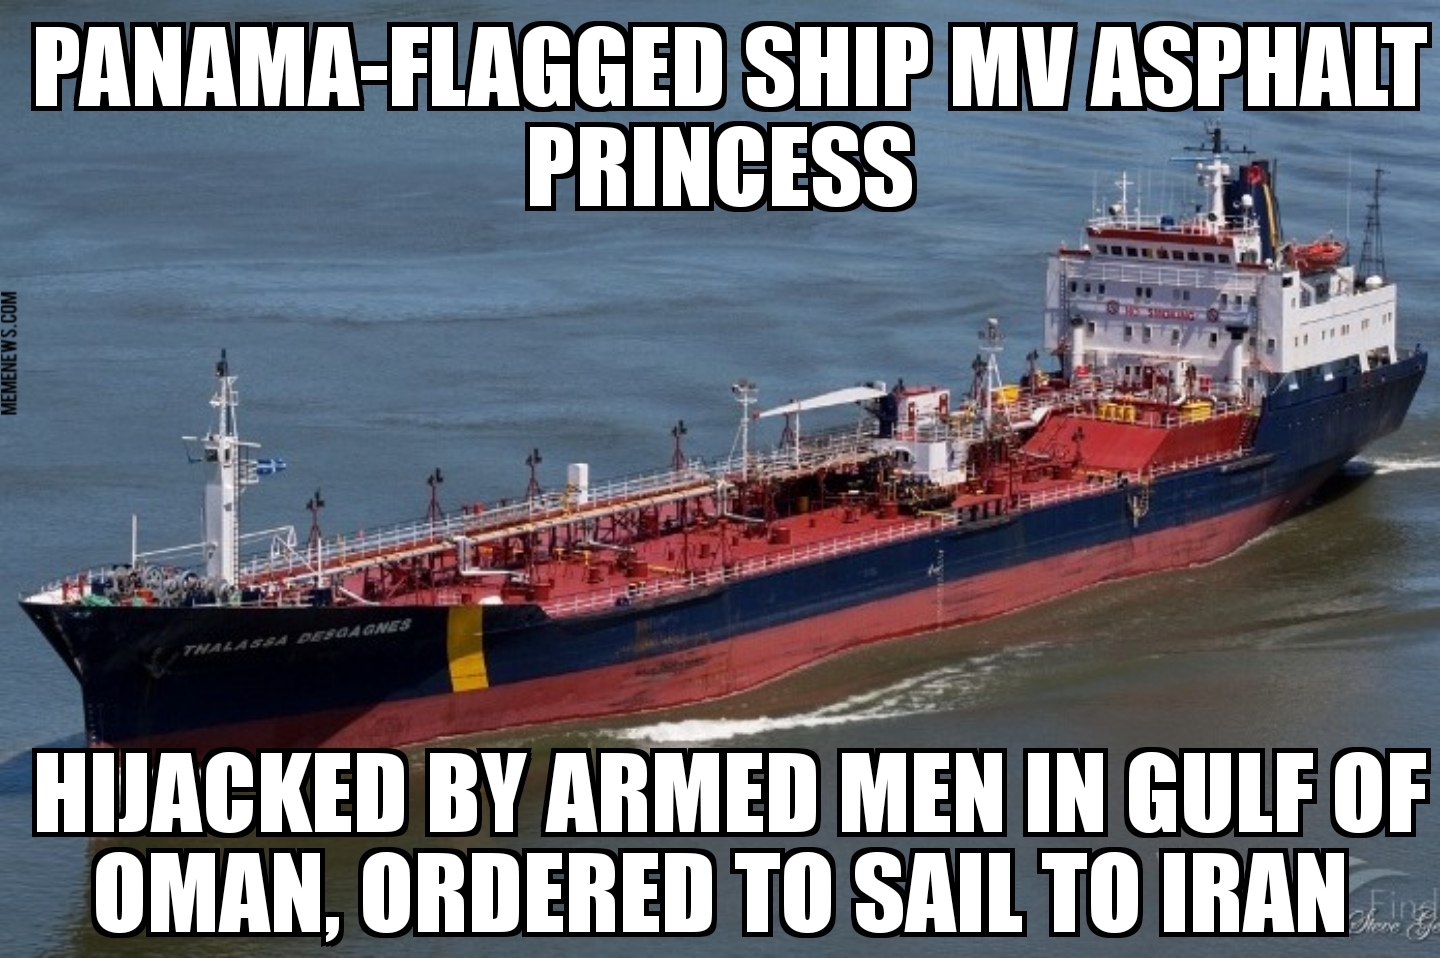 MV Asphalt Princess hijacked